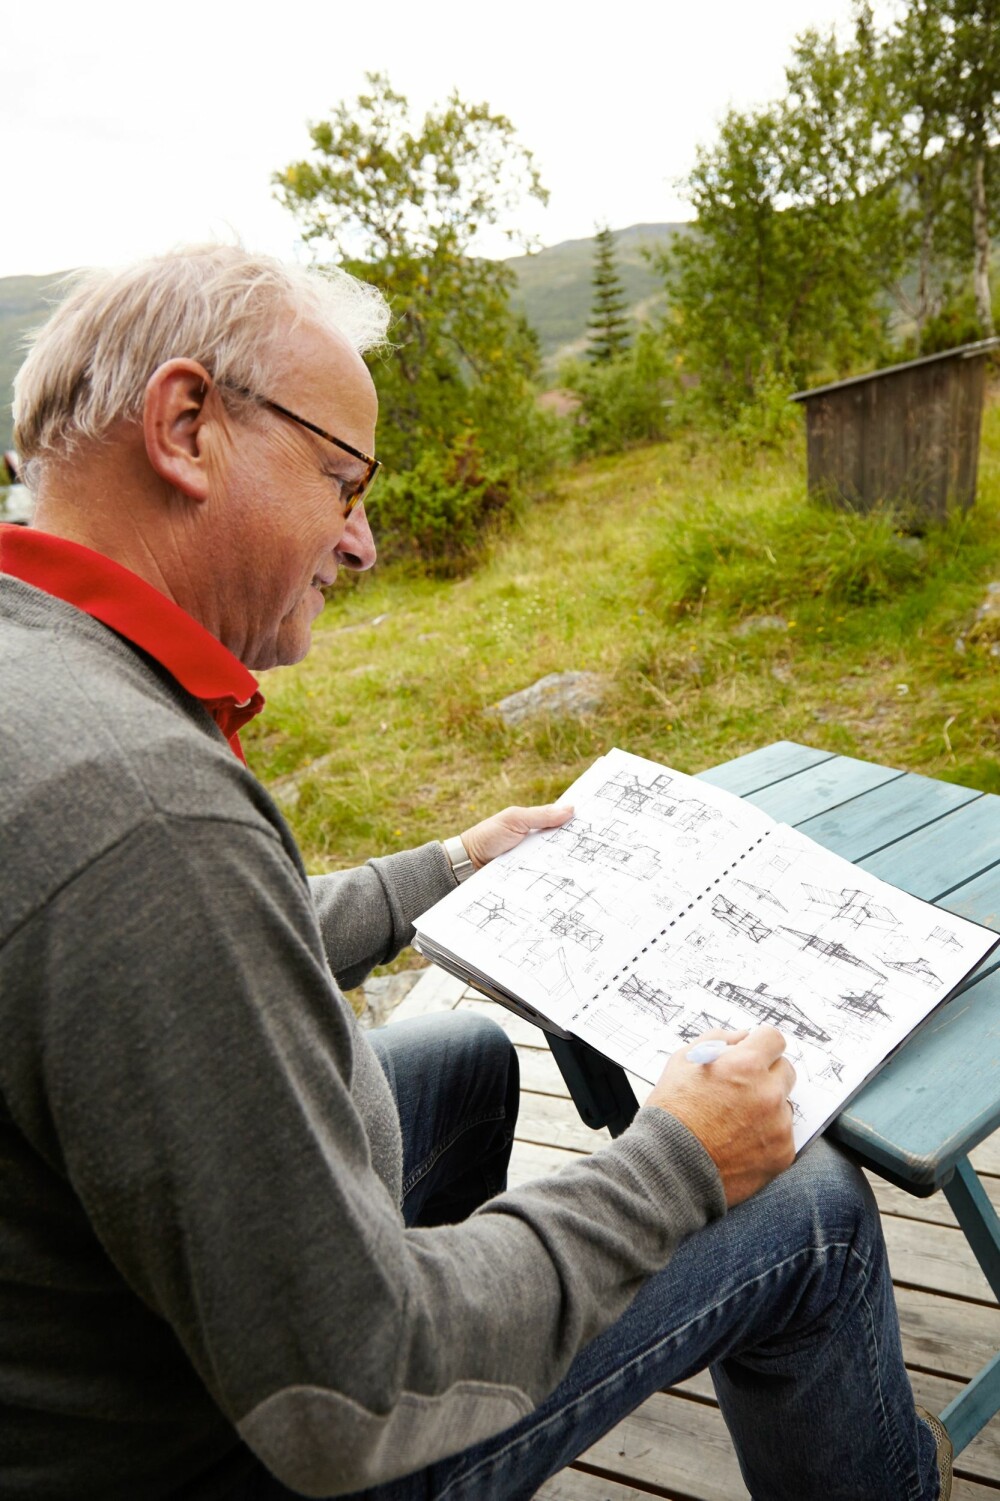 KREATIV PROSESS: Hytteeier og arkitekt Ragnar Osnes har
brukt mye tid for å komme frem til en optimal planløsning.
Her viser han frem noen av de første skissene. Foto: Per Erik Jæger